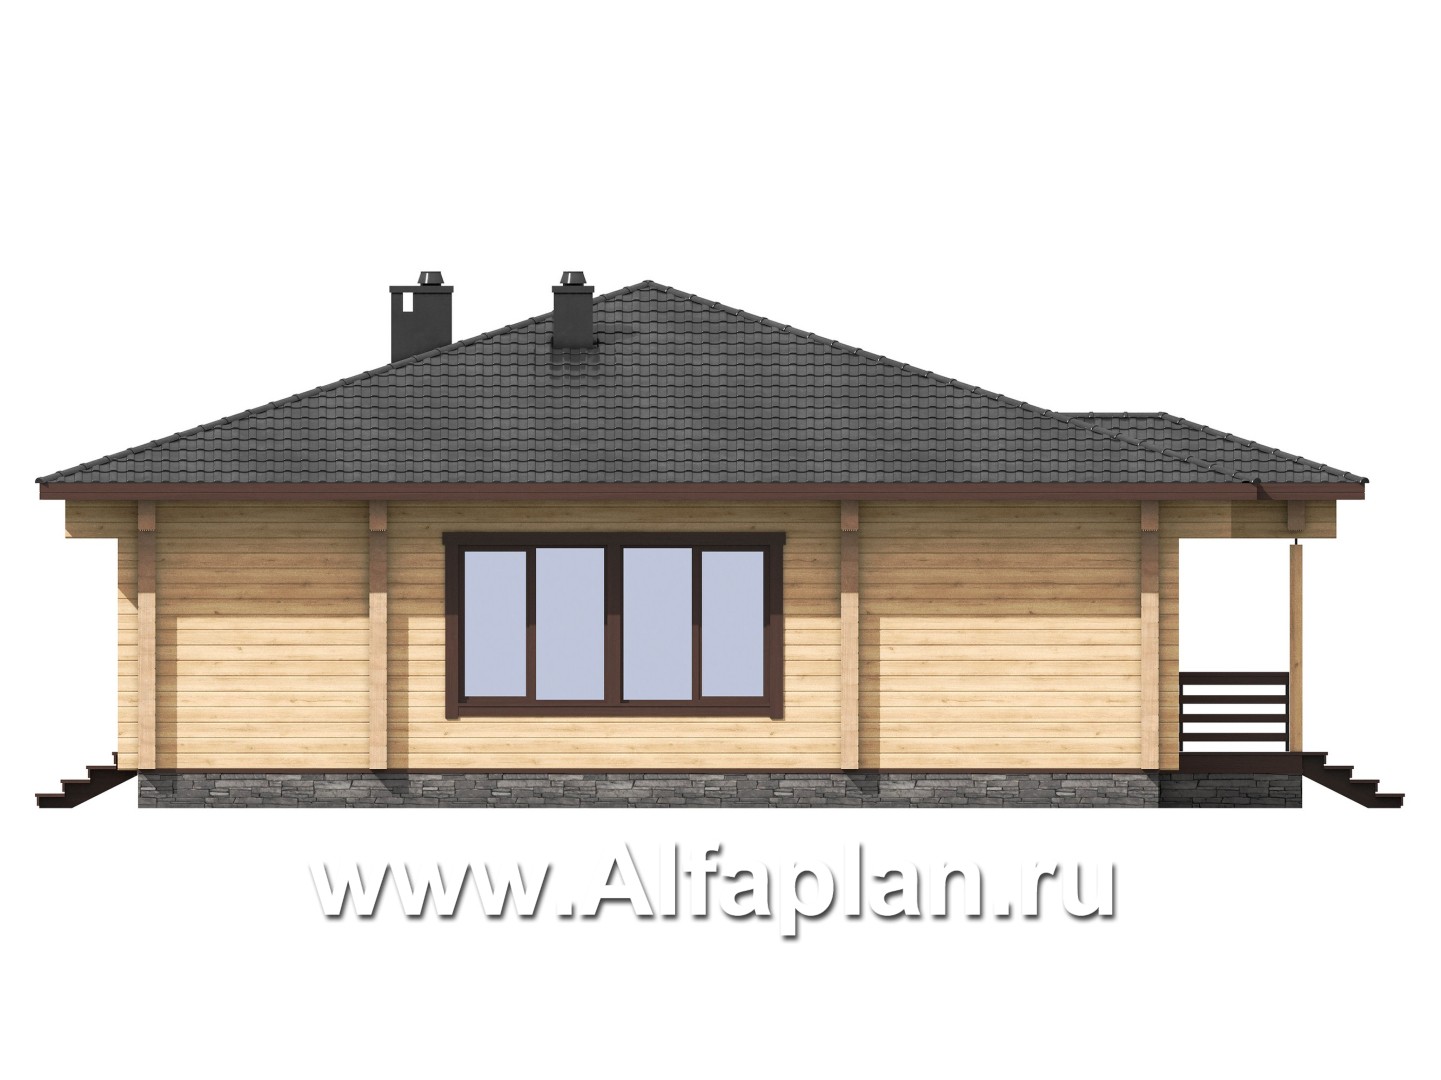 Проект одноэтажного дома из бруса, 3 спальни, дача с террасой, коттедж для отдыха - фасад дома